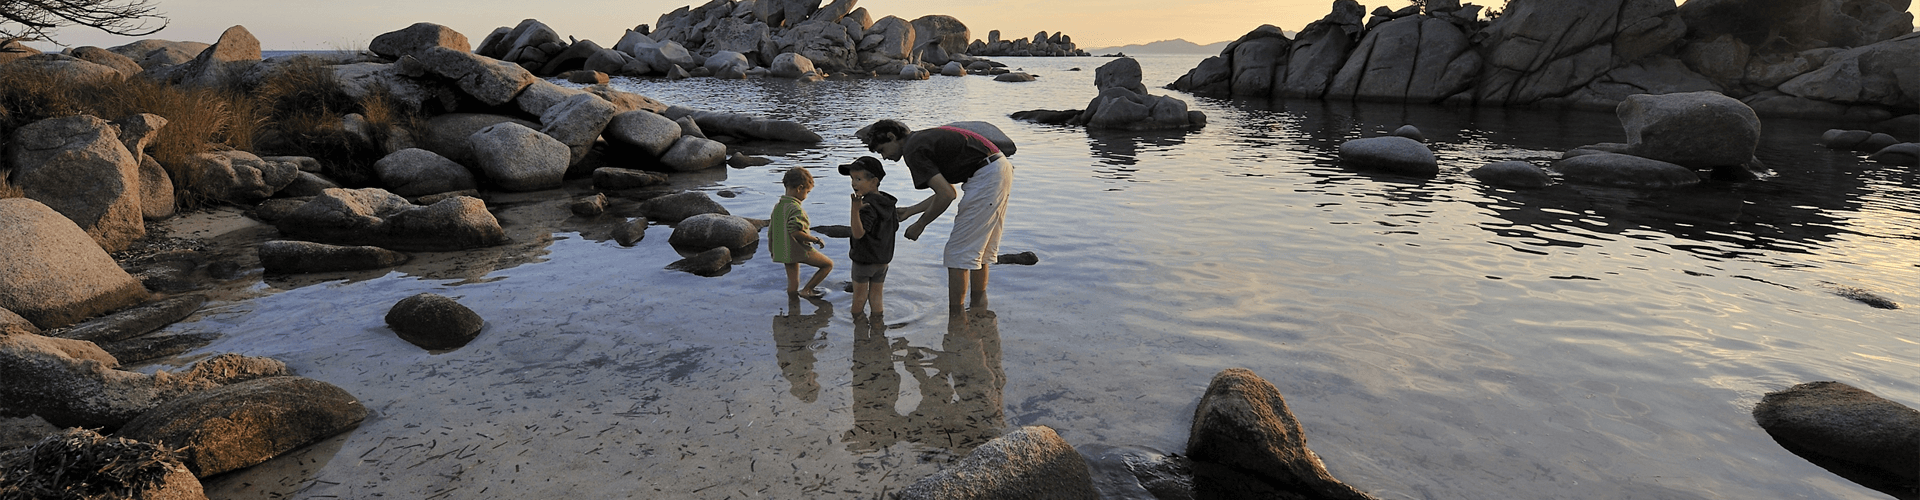 Vakantie met kinderen op Corsica